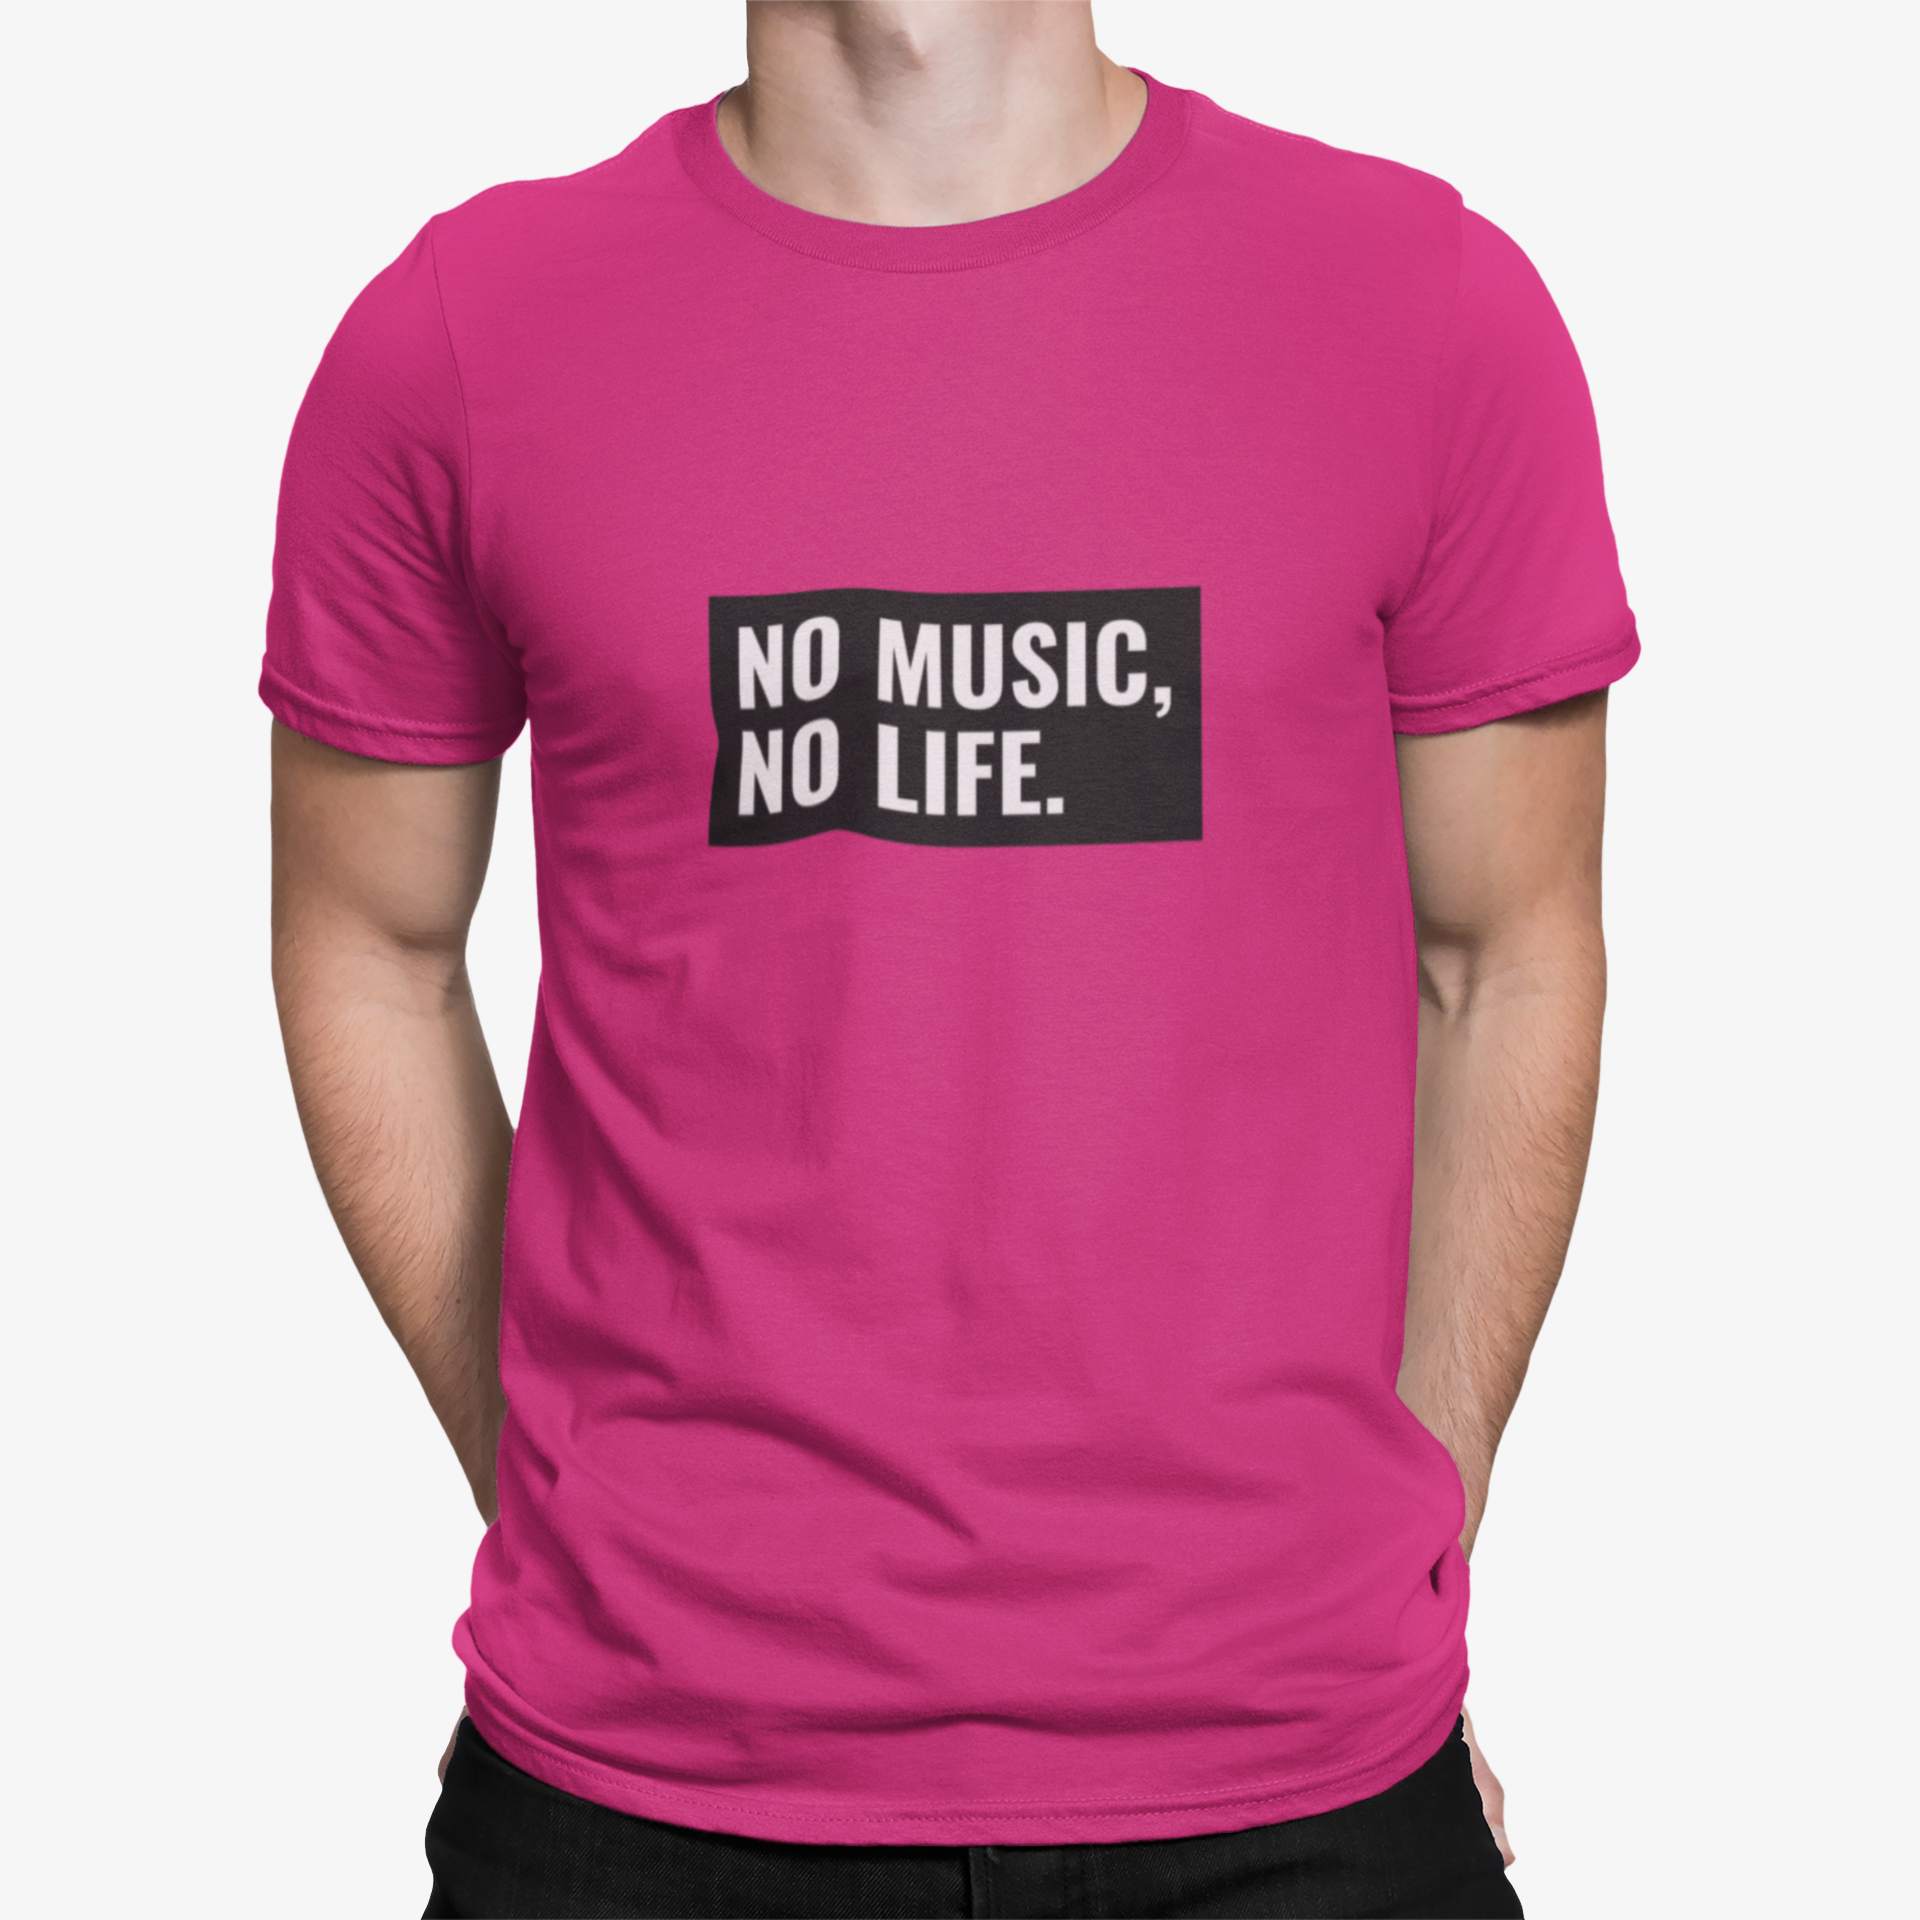 Camiseta No Music No Life